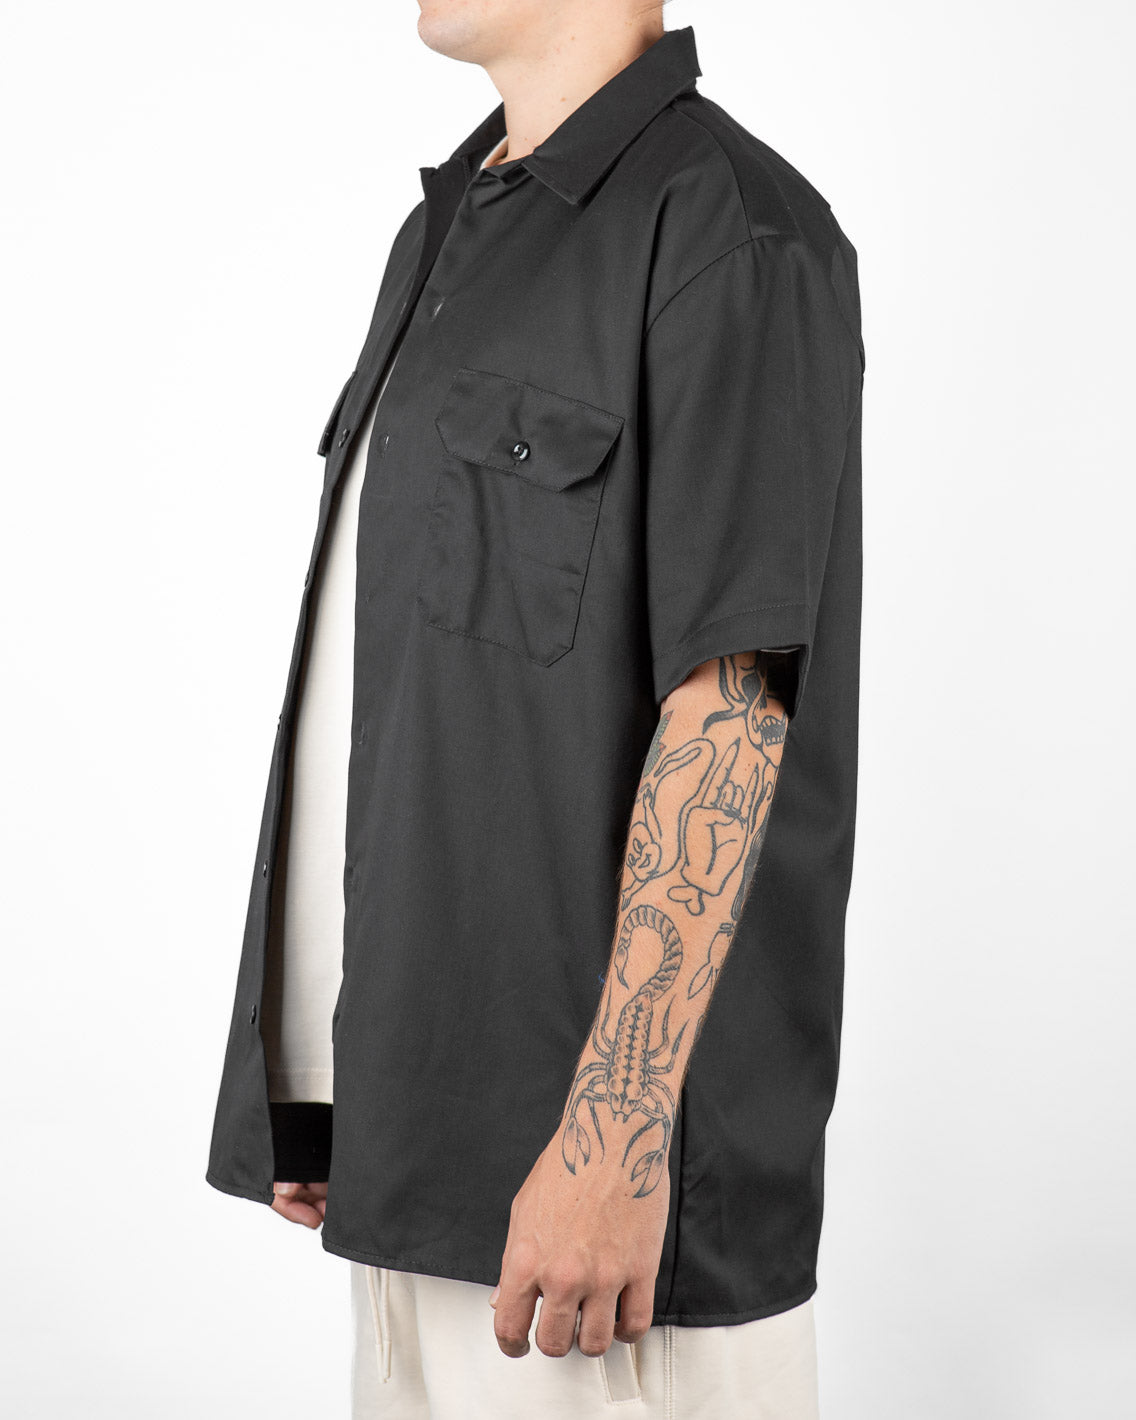 Dickies - Short Sleeve Work Shirt - Black